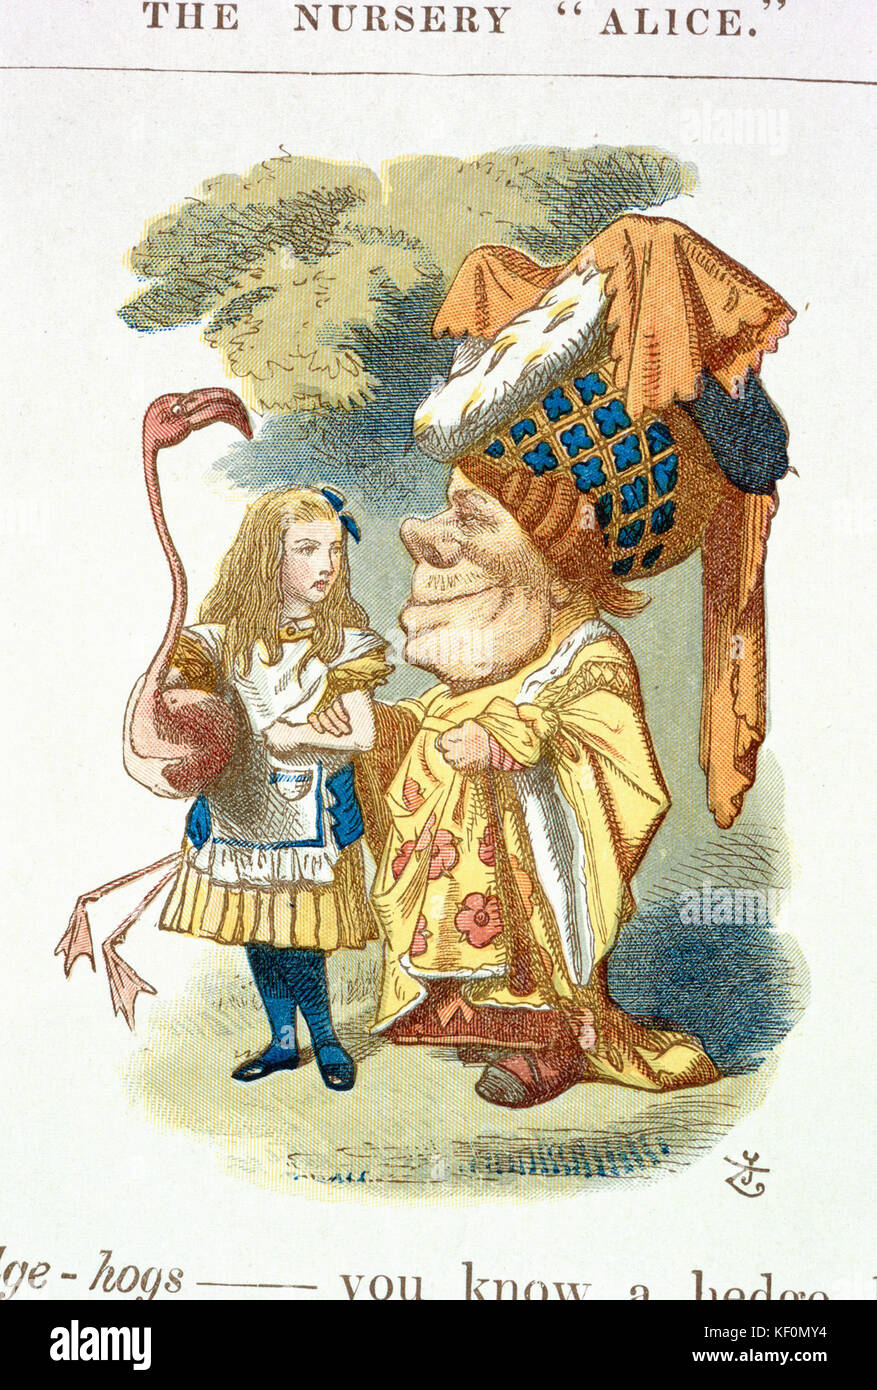 John Tenniel - Abbildung von der Baumschule Alice (1890) Stockfoto